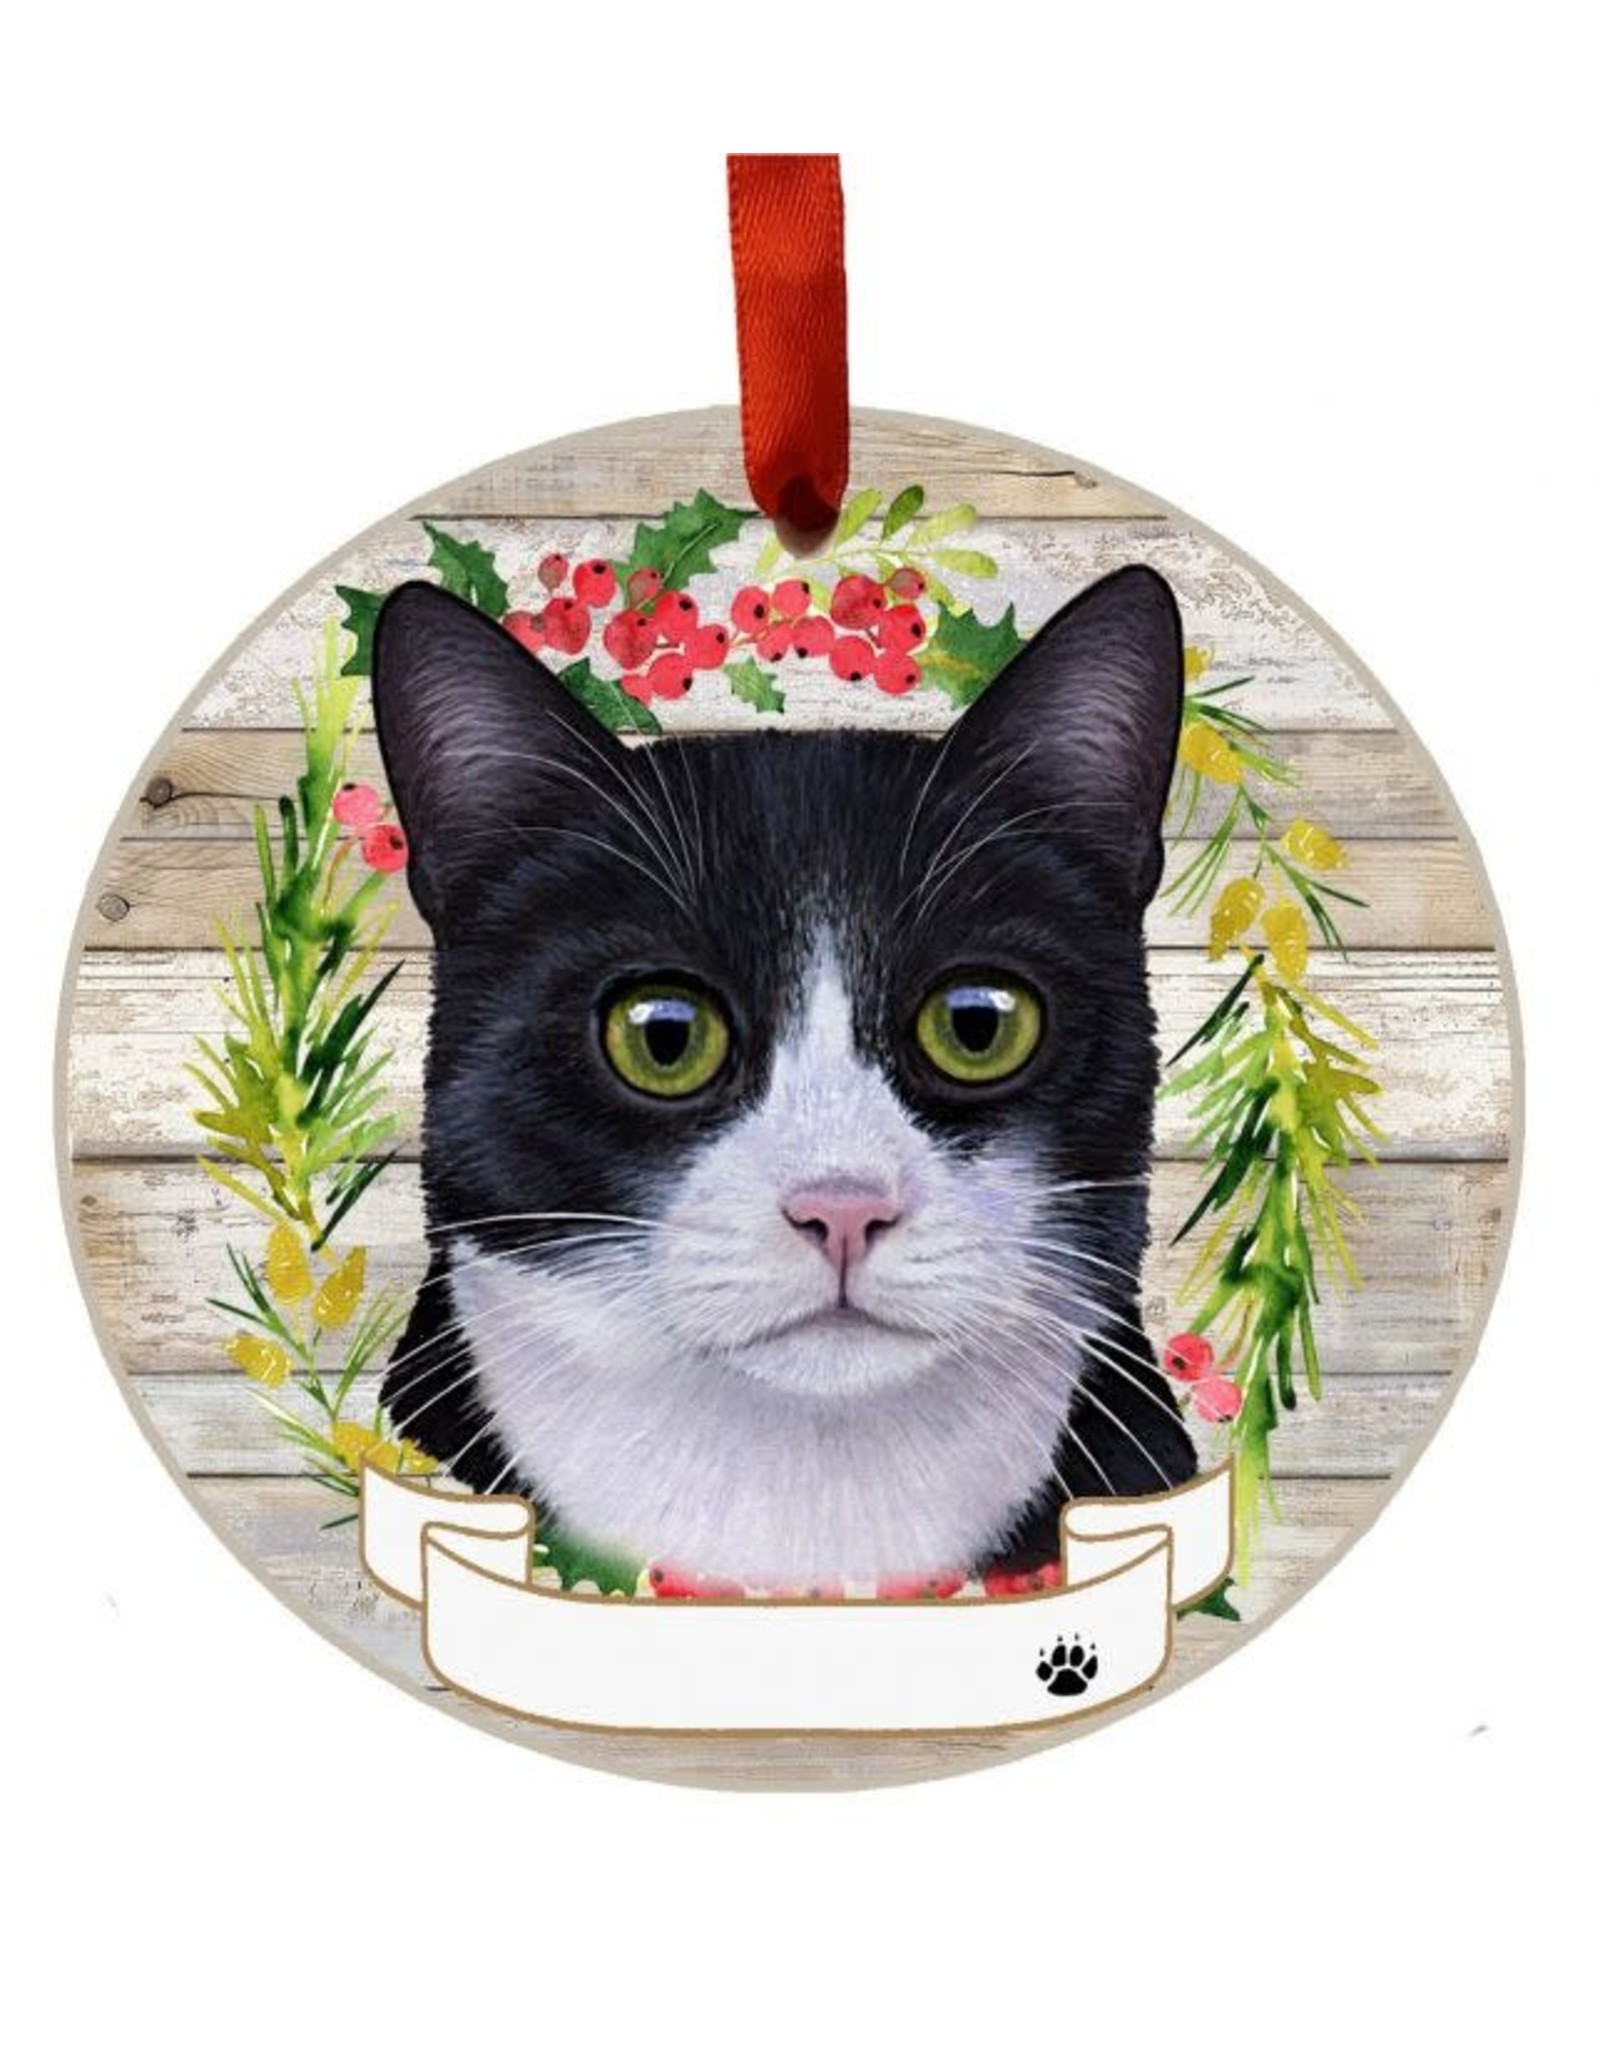 E&S Pets Black & White Cat Wreath Ornament